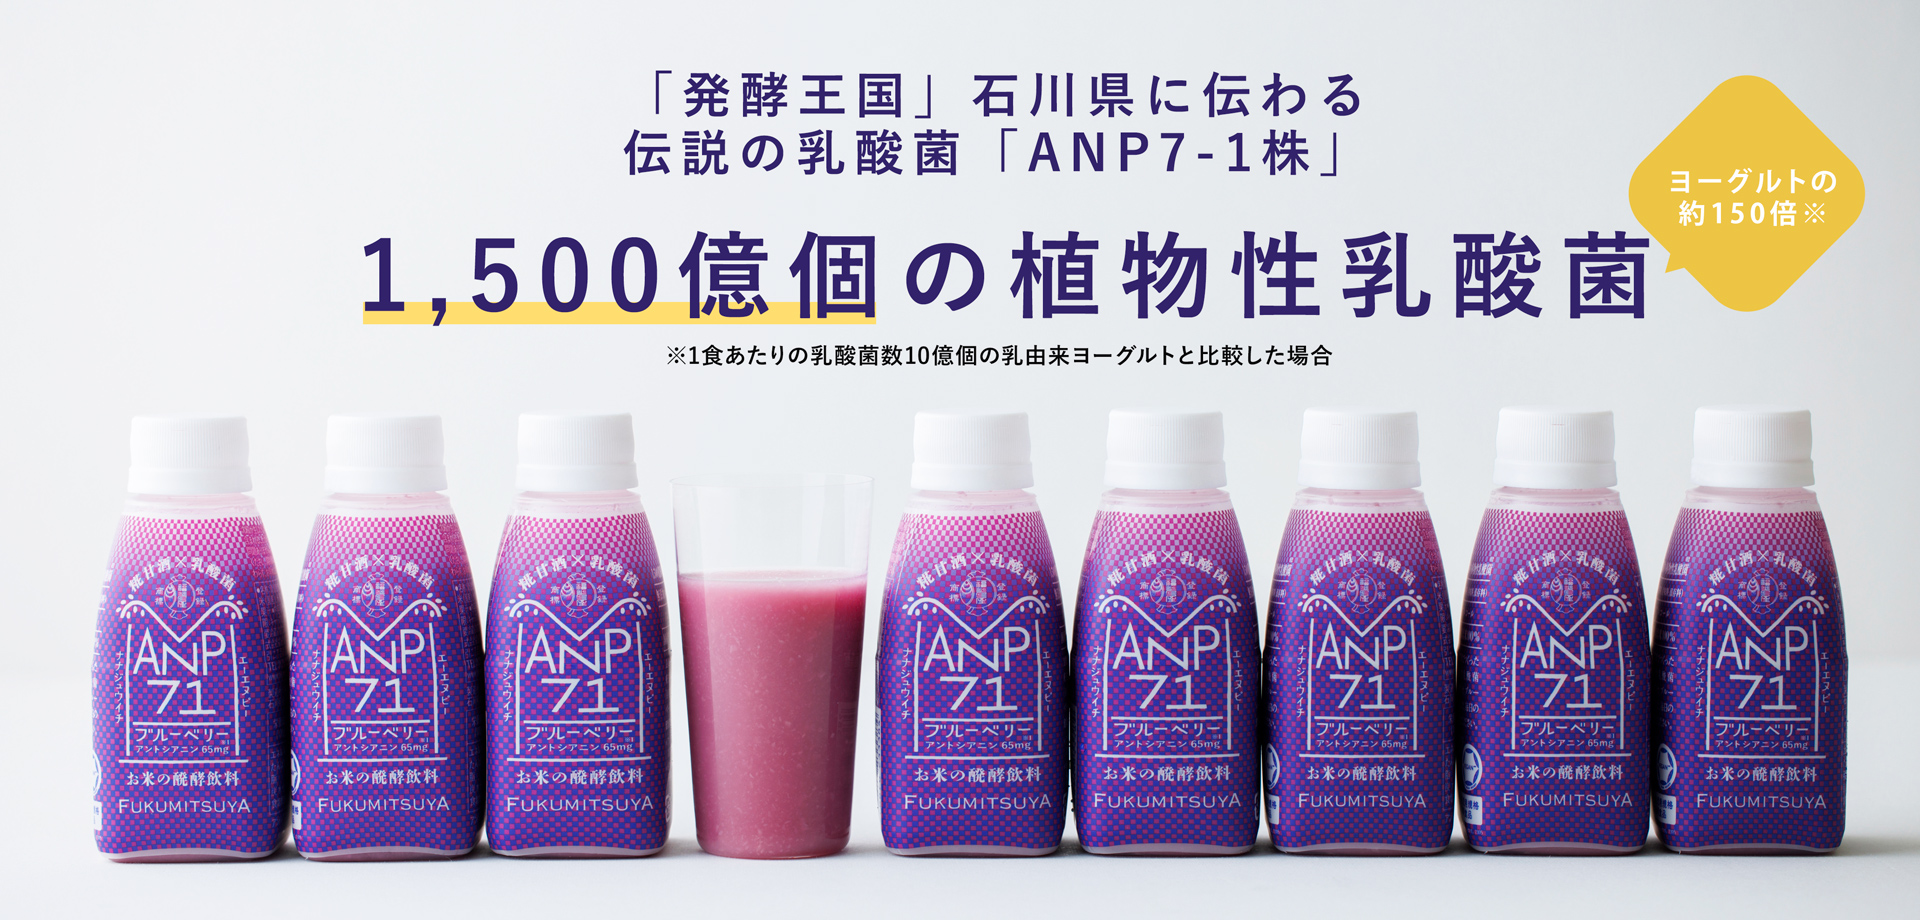 毎日スッキリしない方へ。「発酵王国」石川県に伝わる伝説の乳酸菌「ANP71」1,500億個の植物性乳酸菌